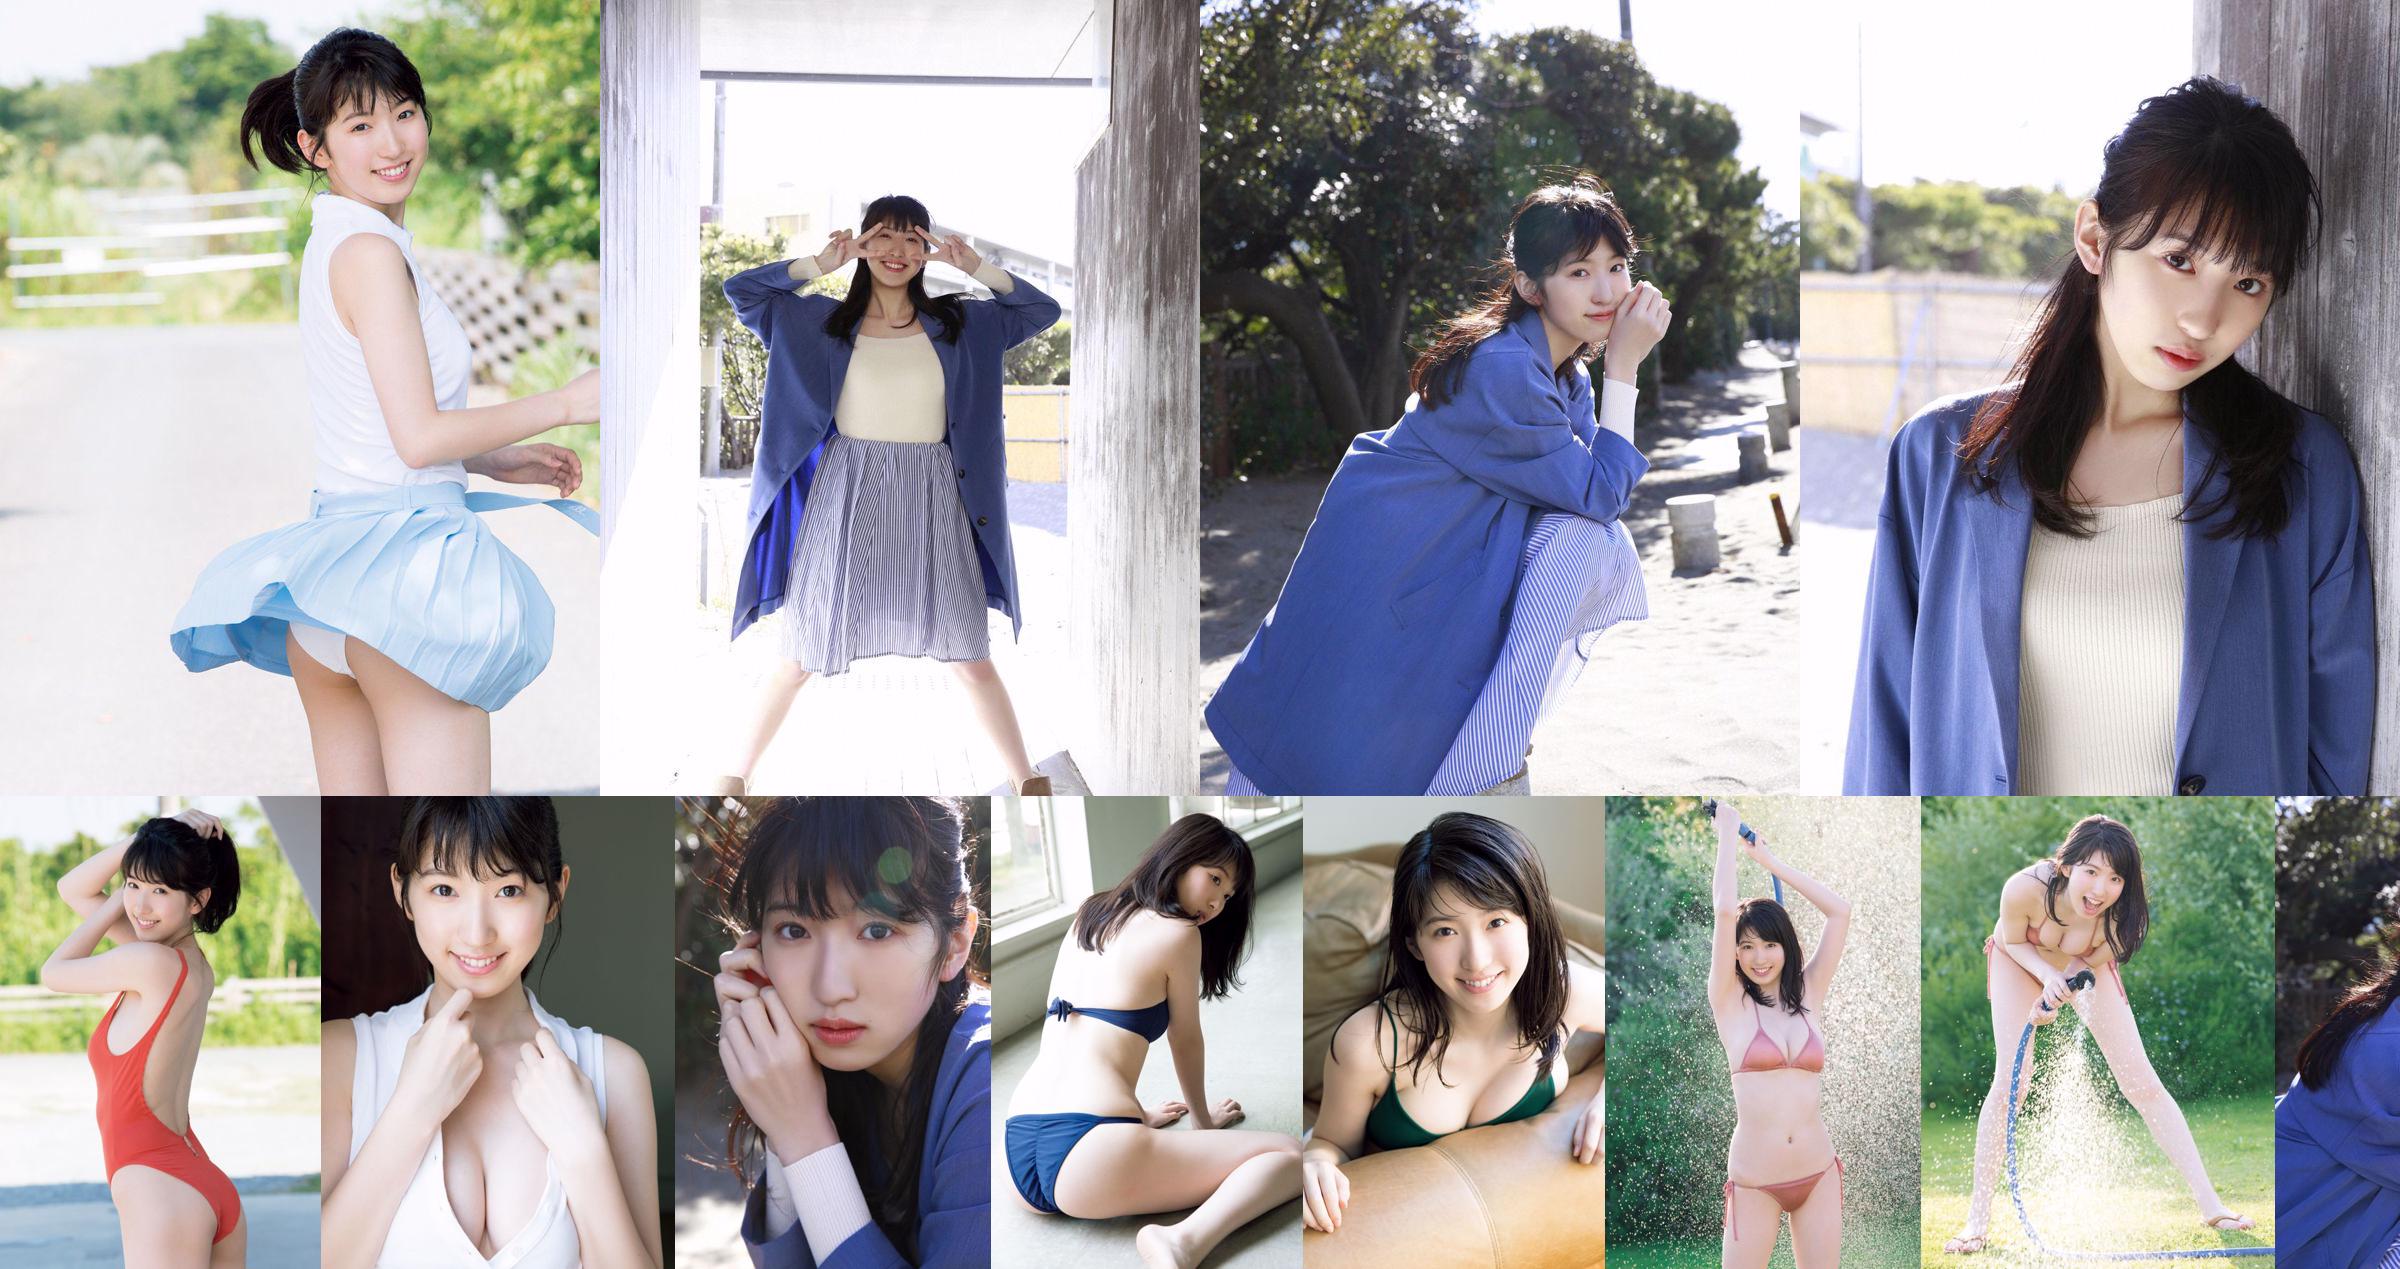 [THỨ SÁU] 《Shuka Saito, 22 tuổi, cô gái 22 tuổi, độc quyền cho ra mắt bộ áo tắm độc quyền về hình ảnh đáng quý của một diễn viên lồng tiếng cho vụ nổ lớn nổi tiếng》 Ảnh No.e49464 Trang 1